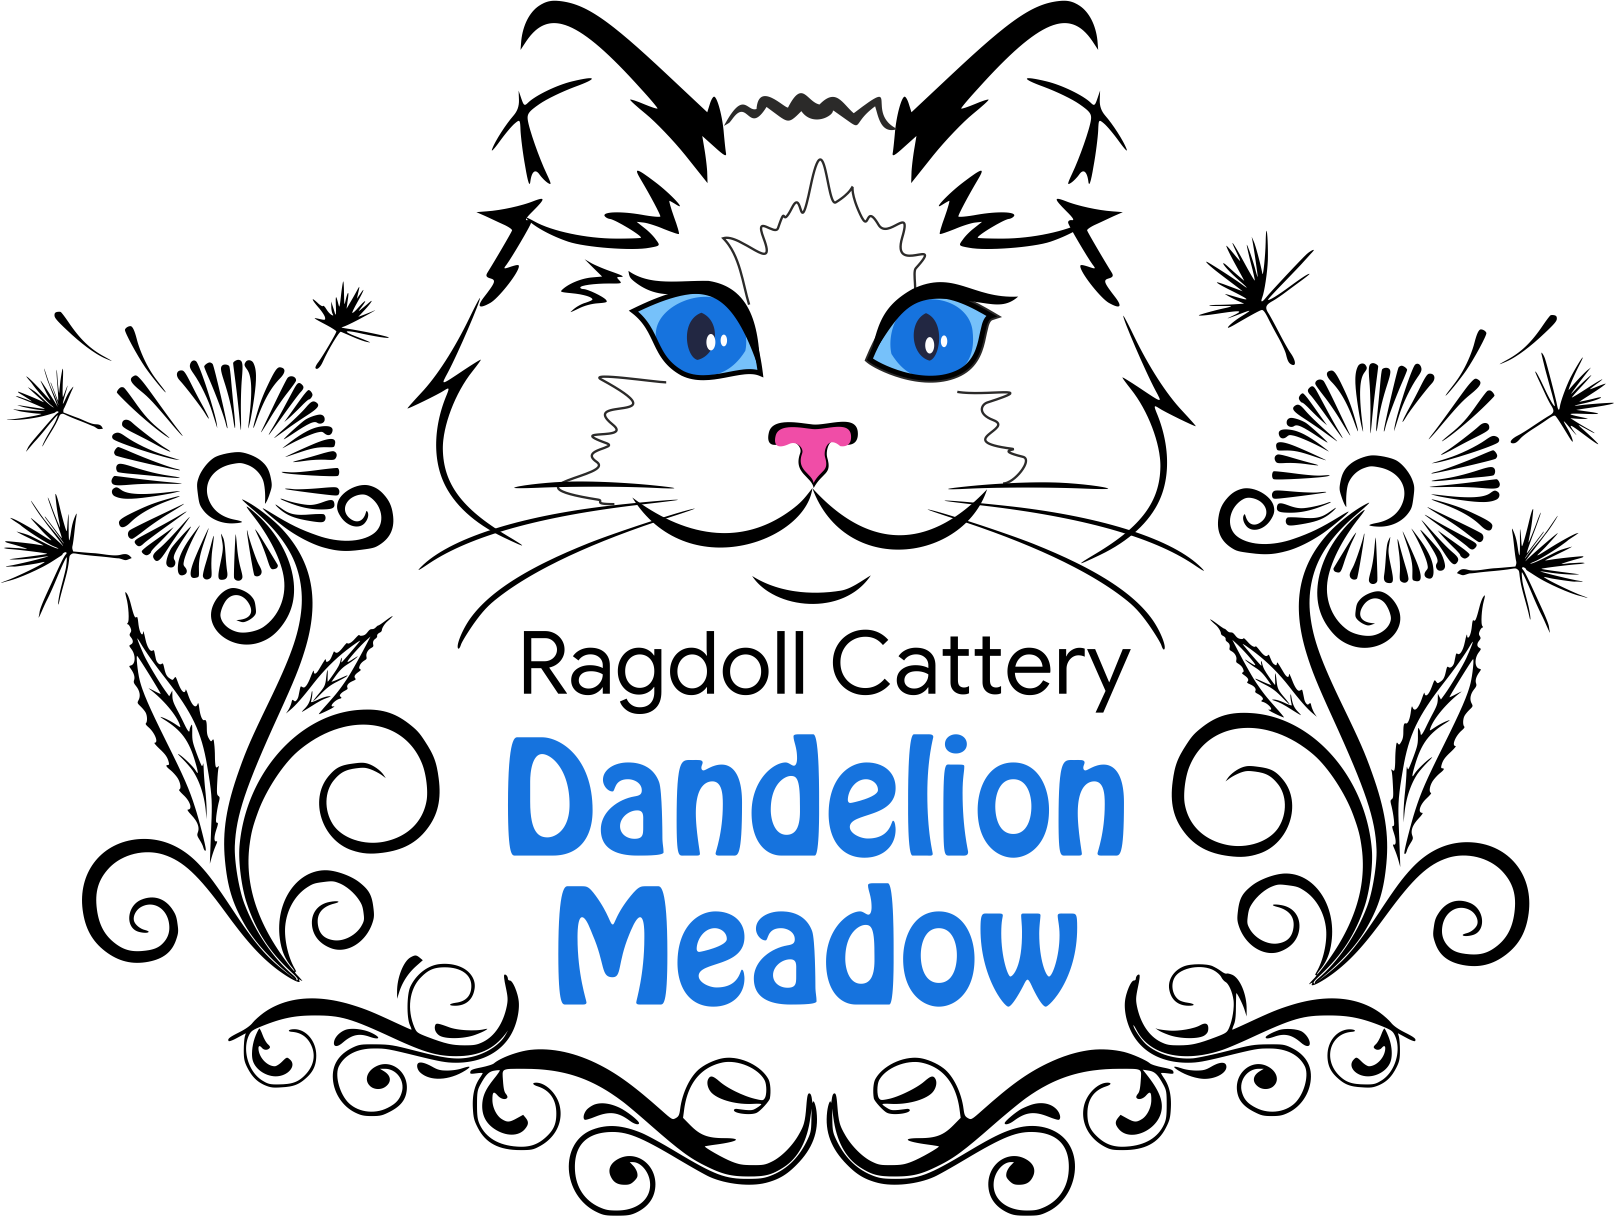 DANDELION MEADOW